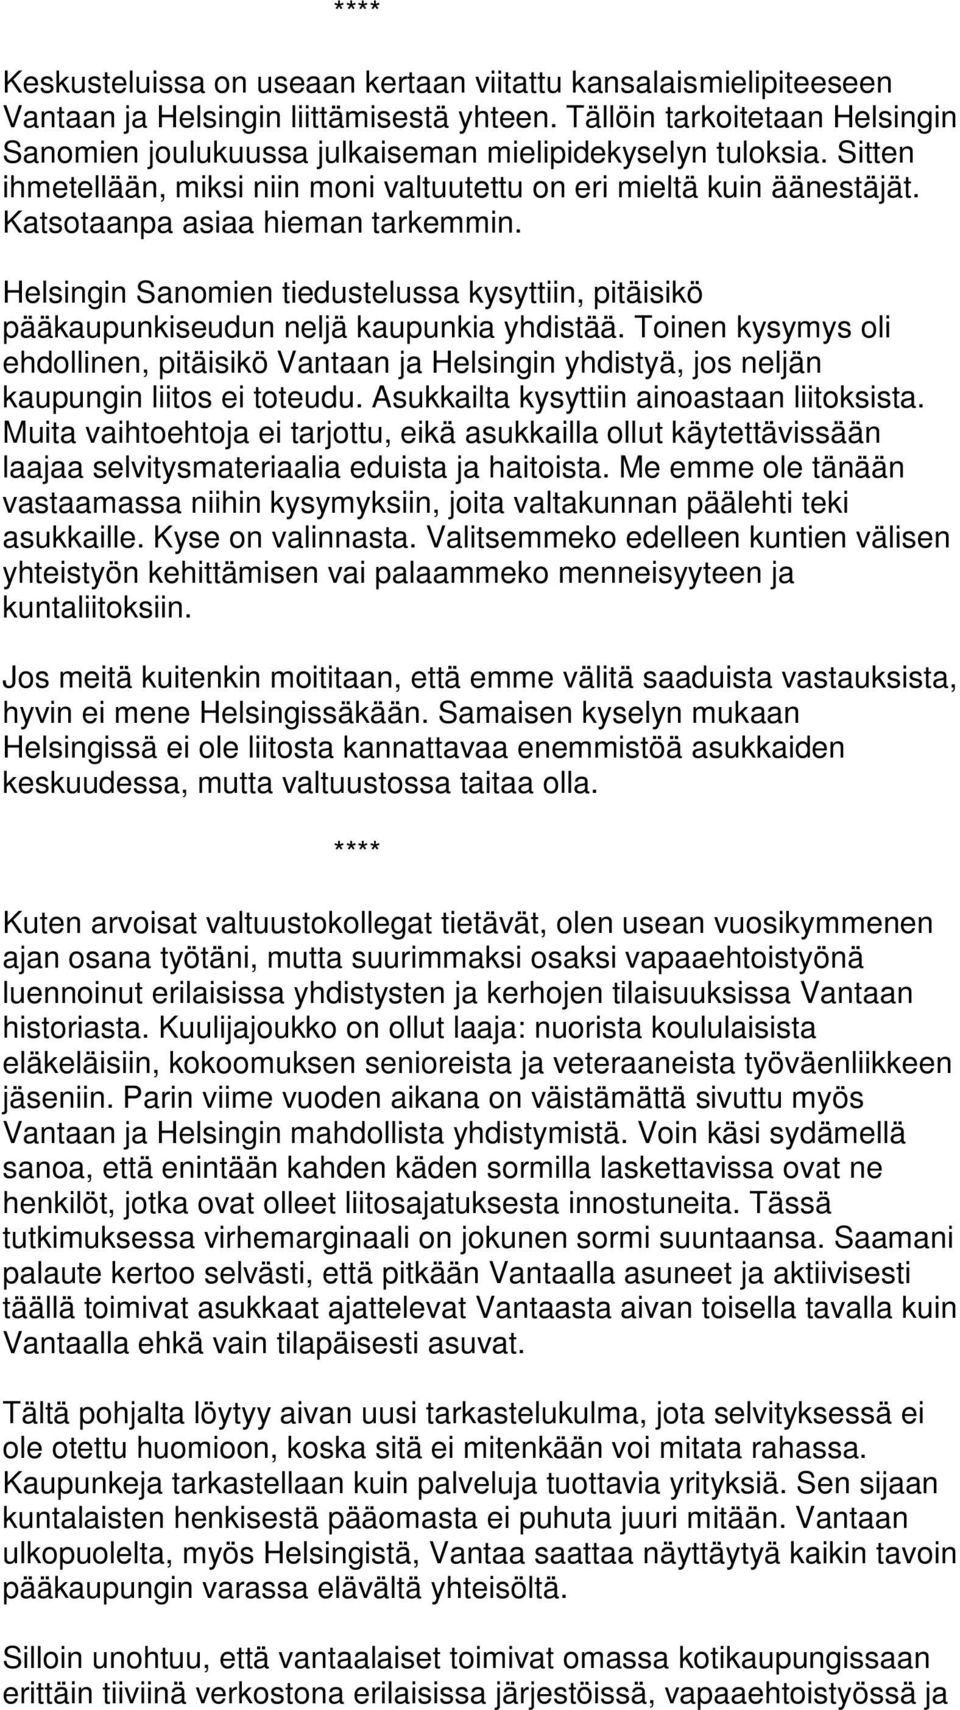 Helsingin Sanomien tiedustelussa kysyttiin, pitäisikö pääkaupunkiseudun neljä kaupunkia yhdistää.